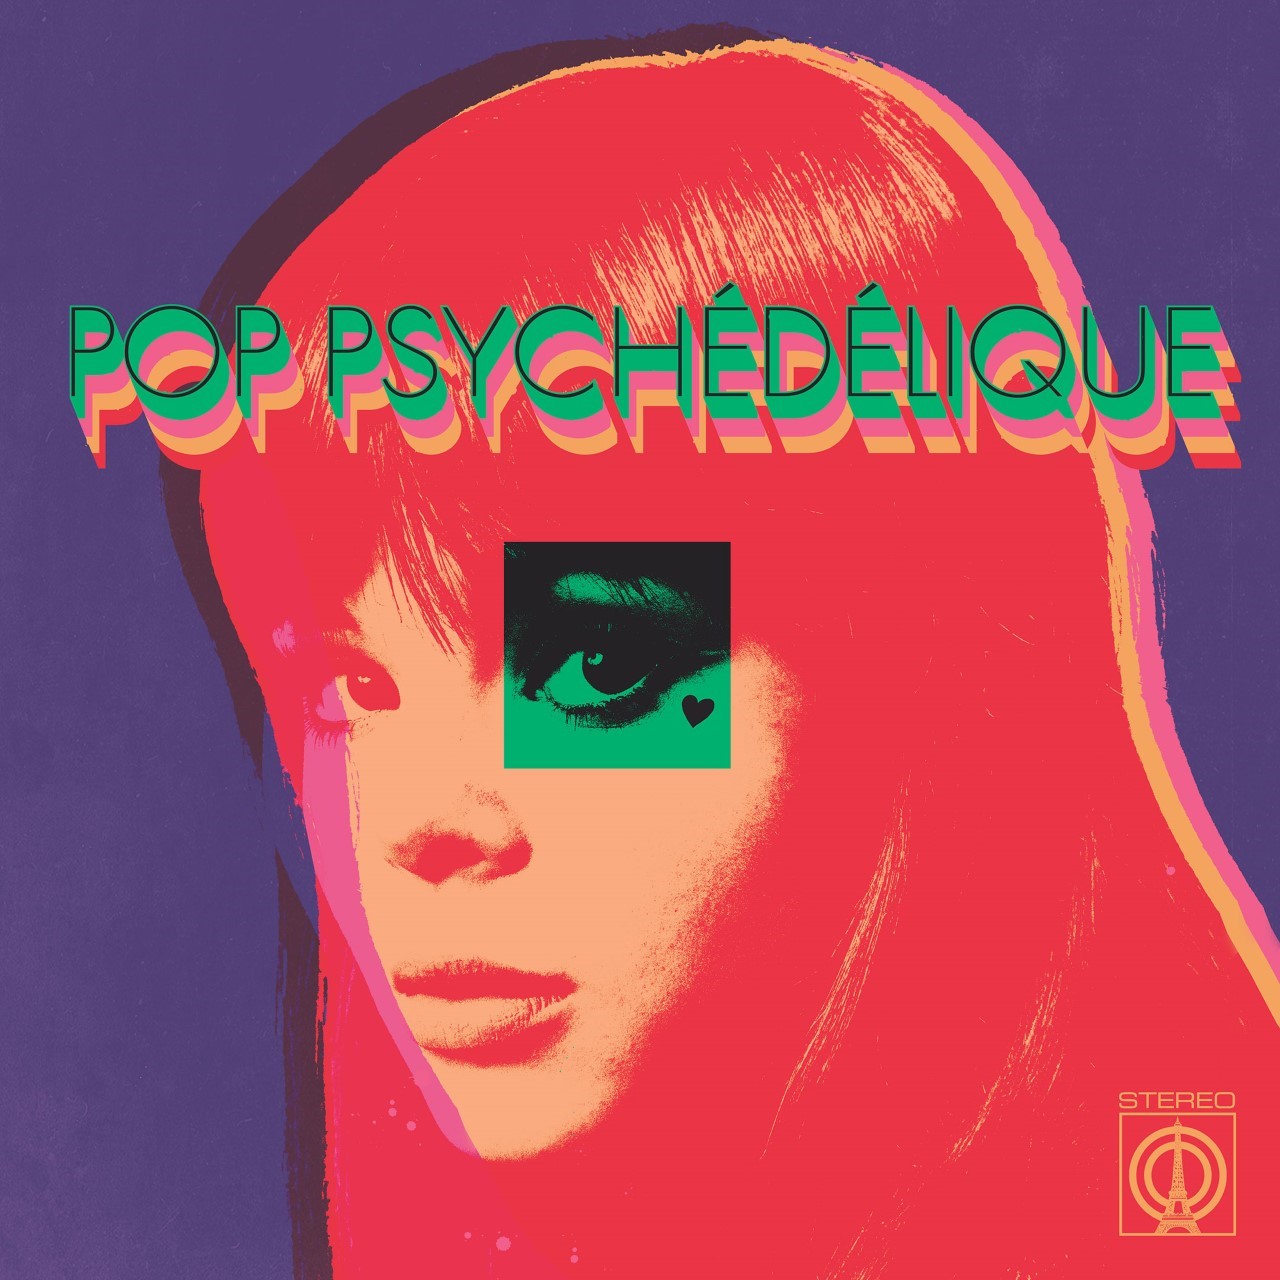 ALBUM ANNOUNCEMENT // Pop Psychédélique (The Best Of French Psychedelic Pop 1964-2019)